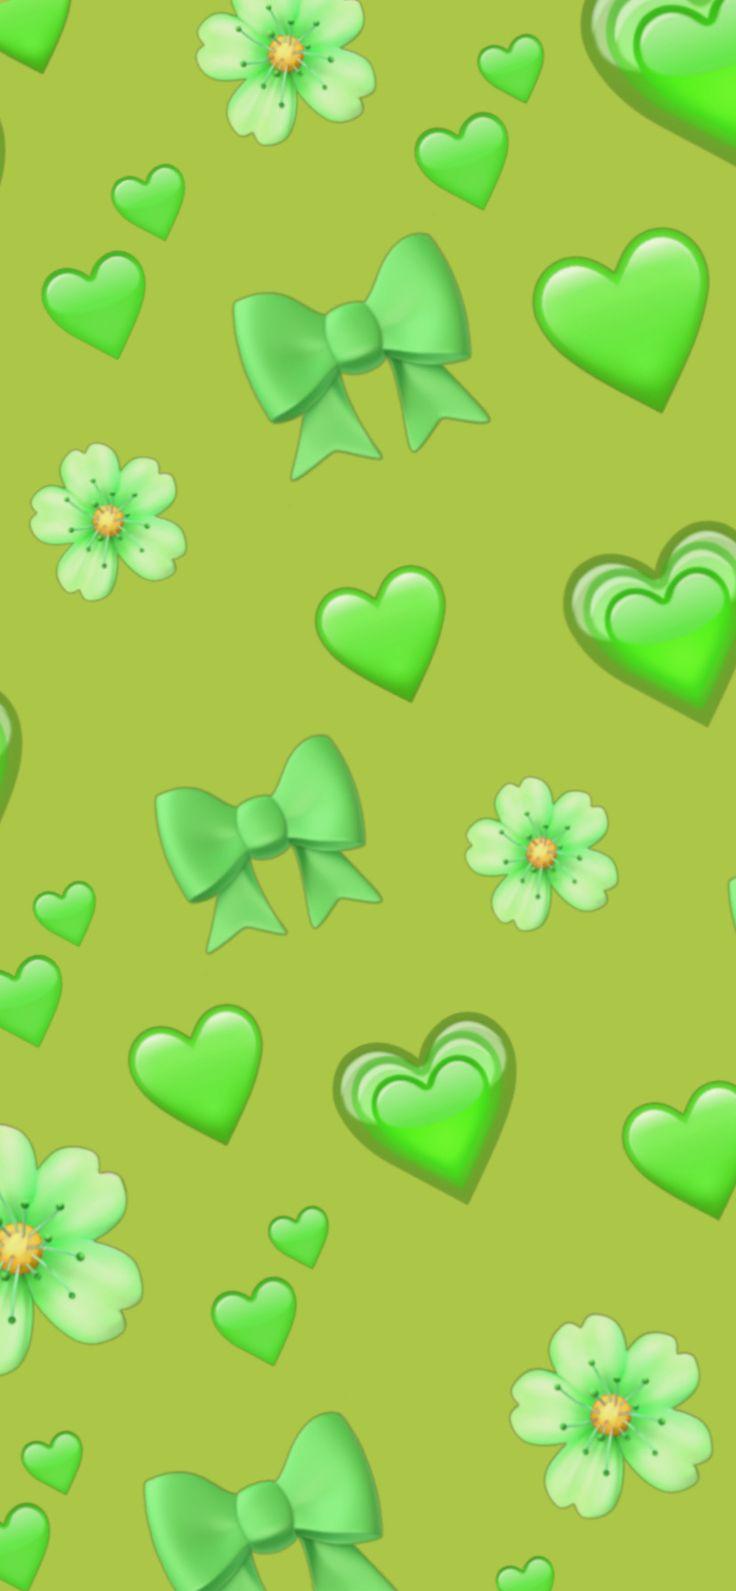 Green Emoji Wallpaper In Original iPhone